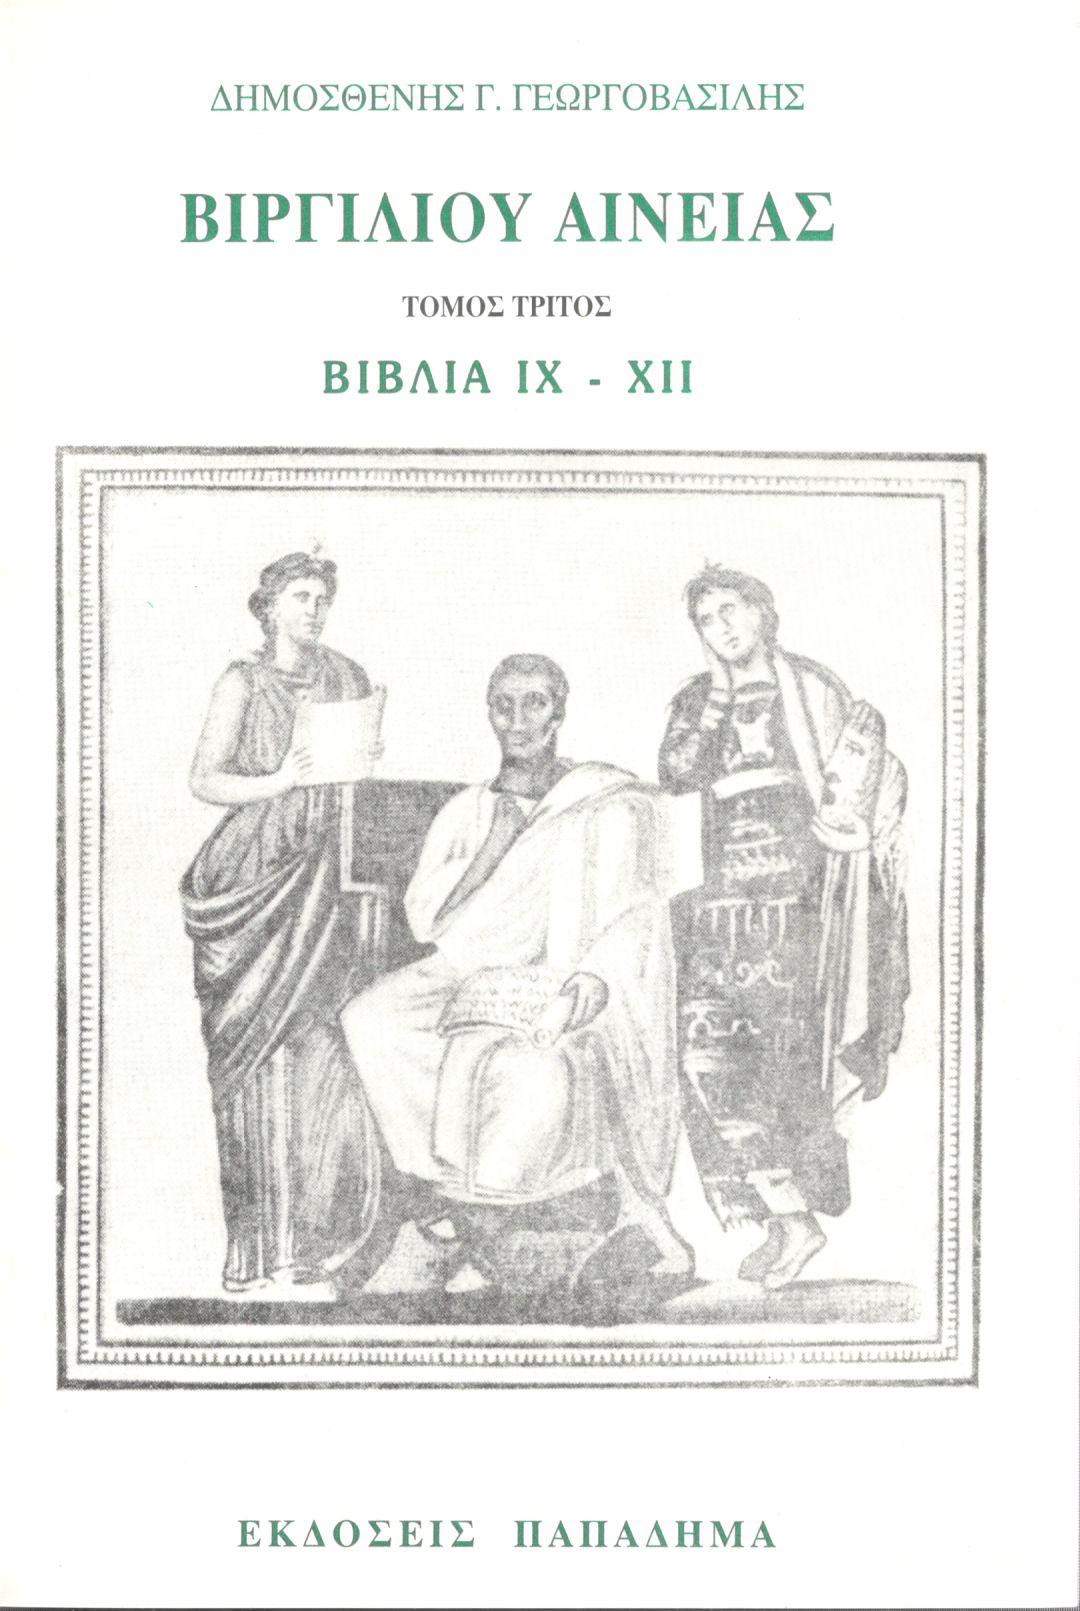 Βιργιλίου Αινειάς, Τόμος τρίτος, Βιβλία IX-XII